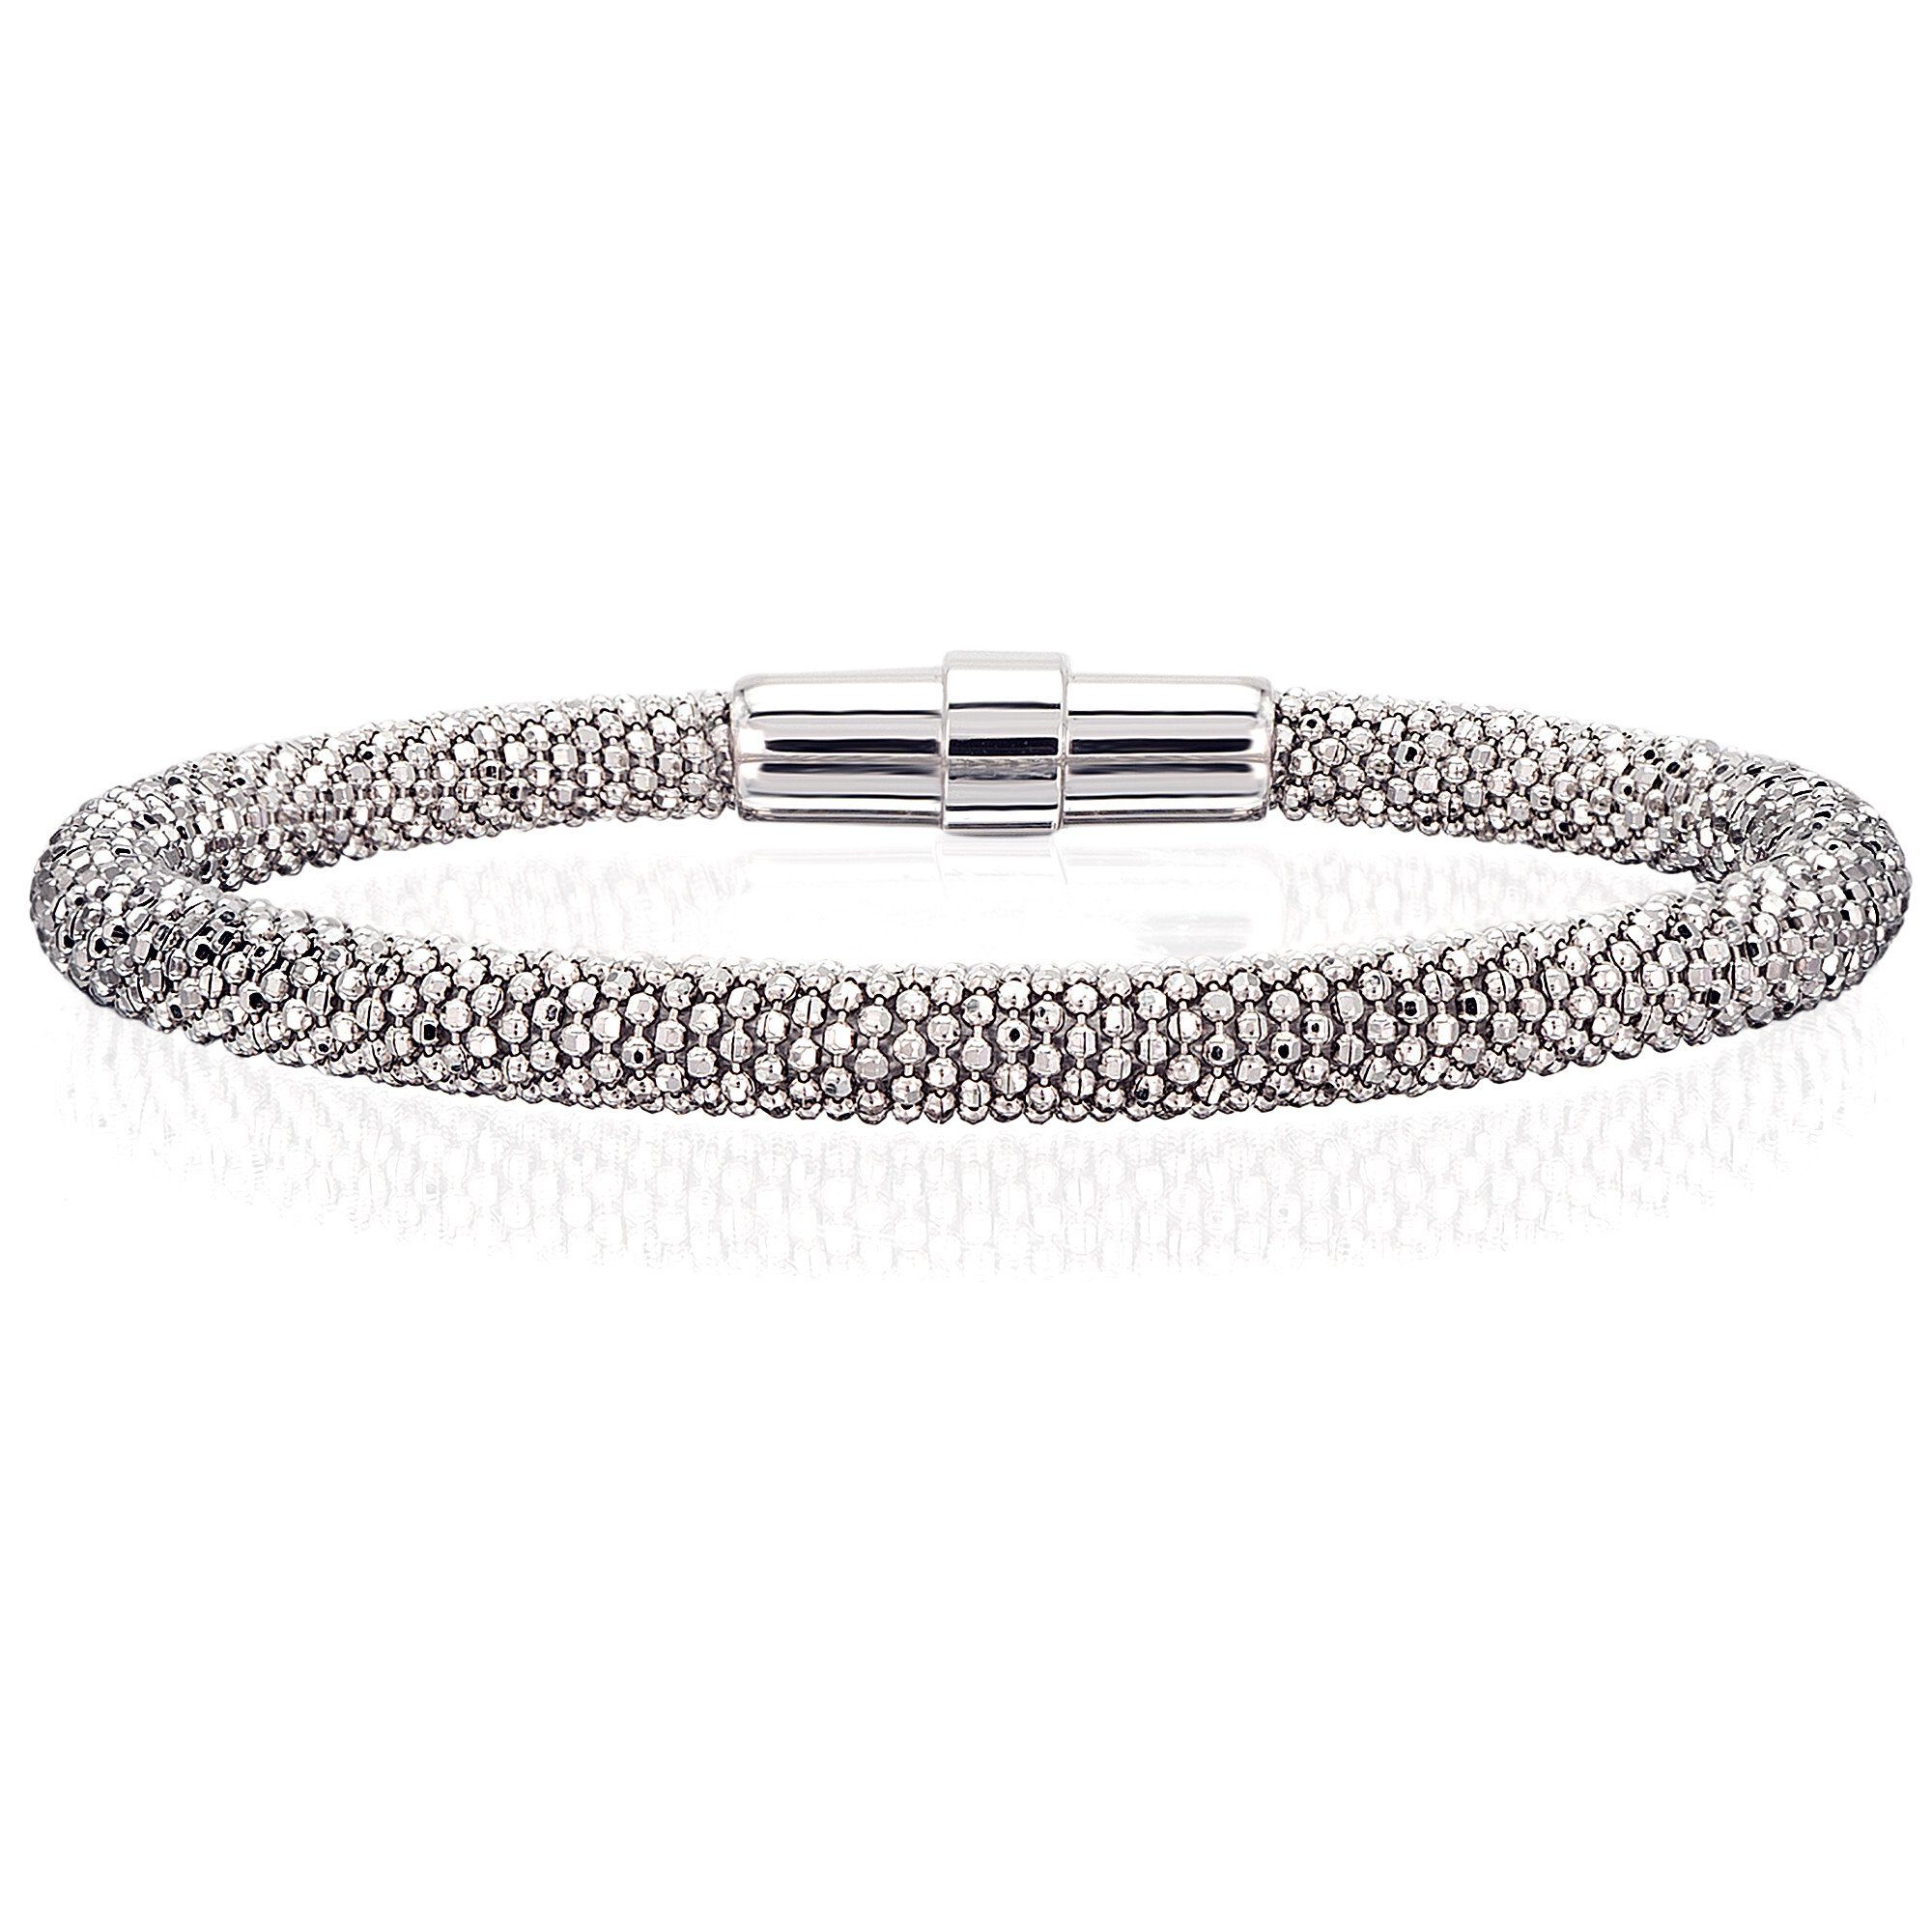 ONE ELEMENT Silberarmband Armband aus 925 Silber 19 cm Ø, Damen Silber  Schmuck, Verschluss : Magnetschloß